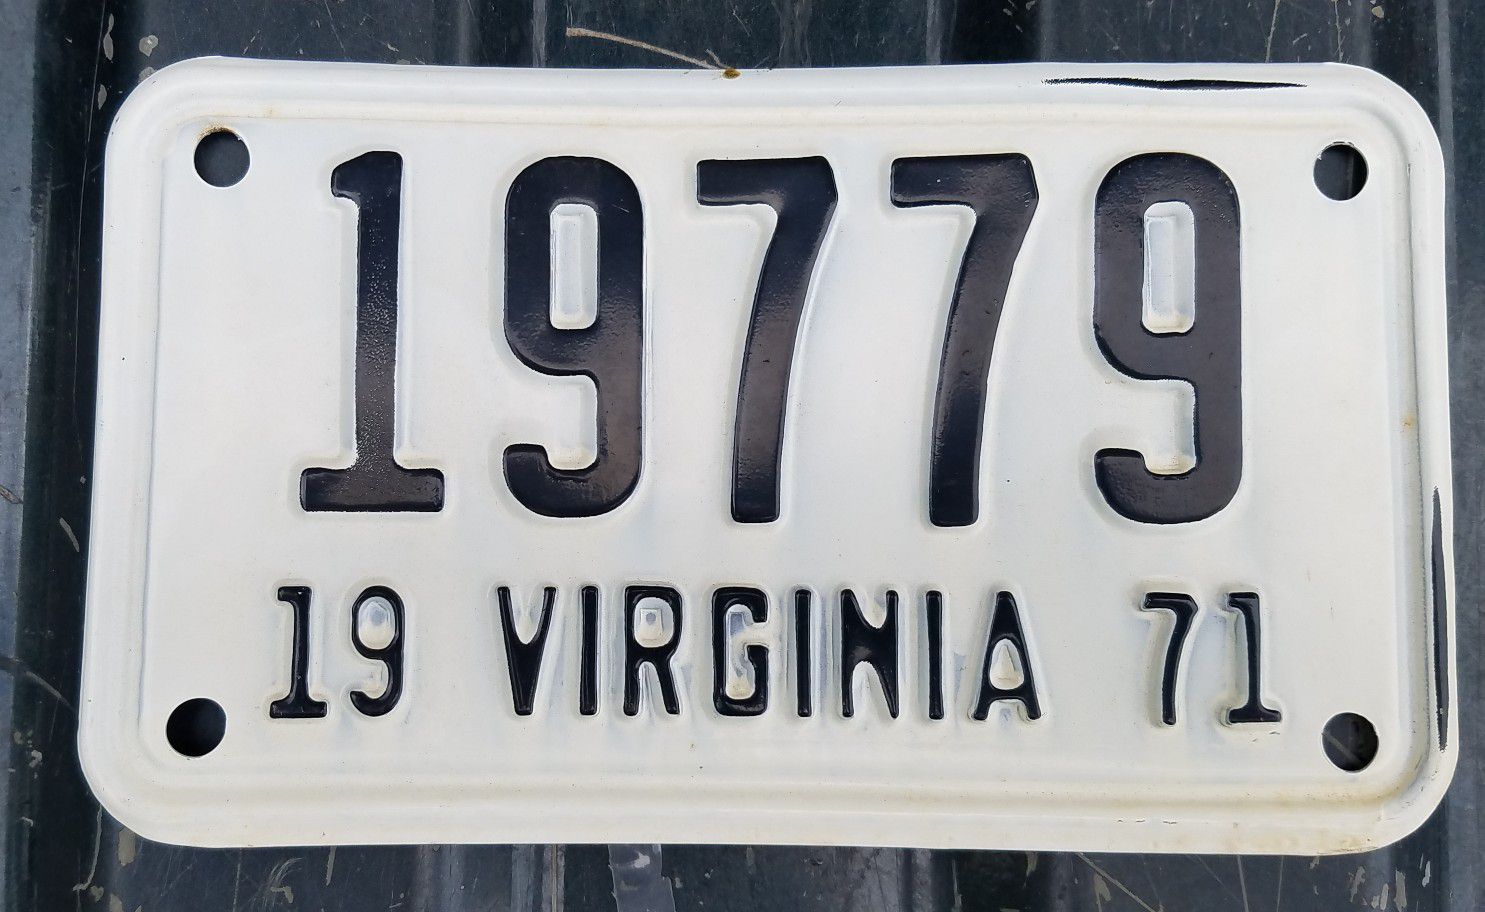 1971 Virginia motorcycle license plate